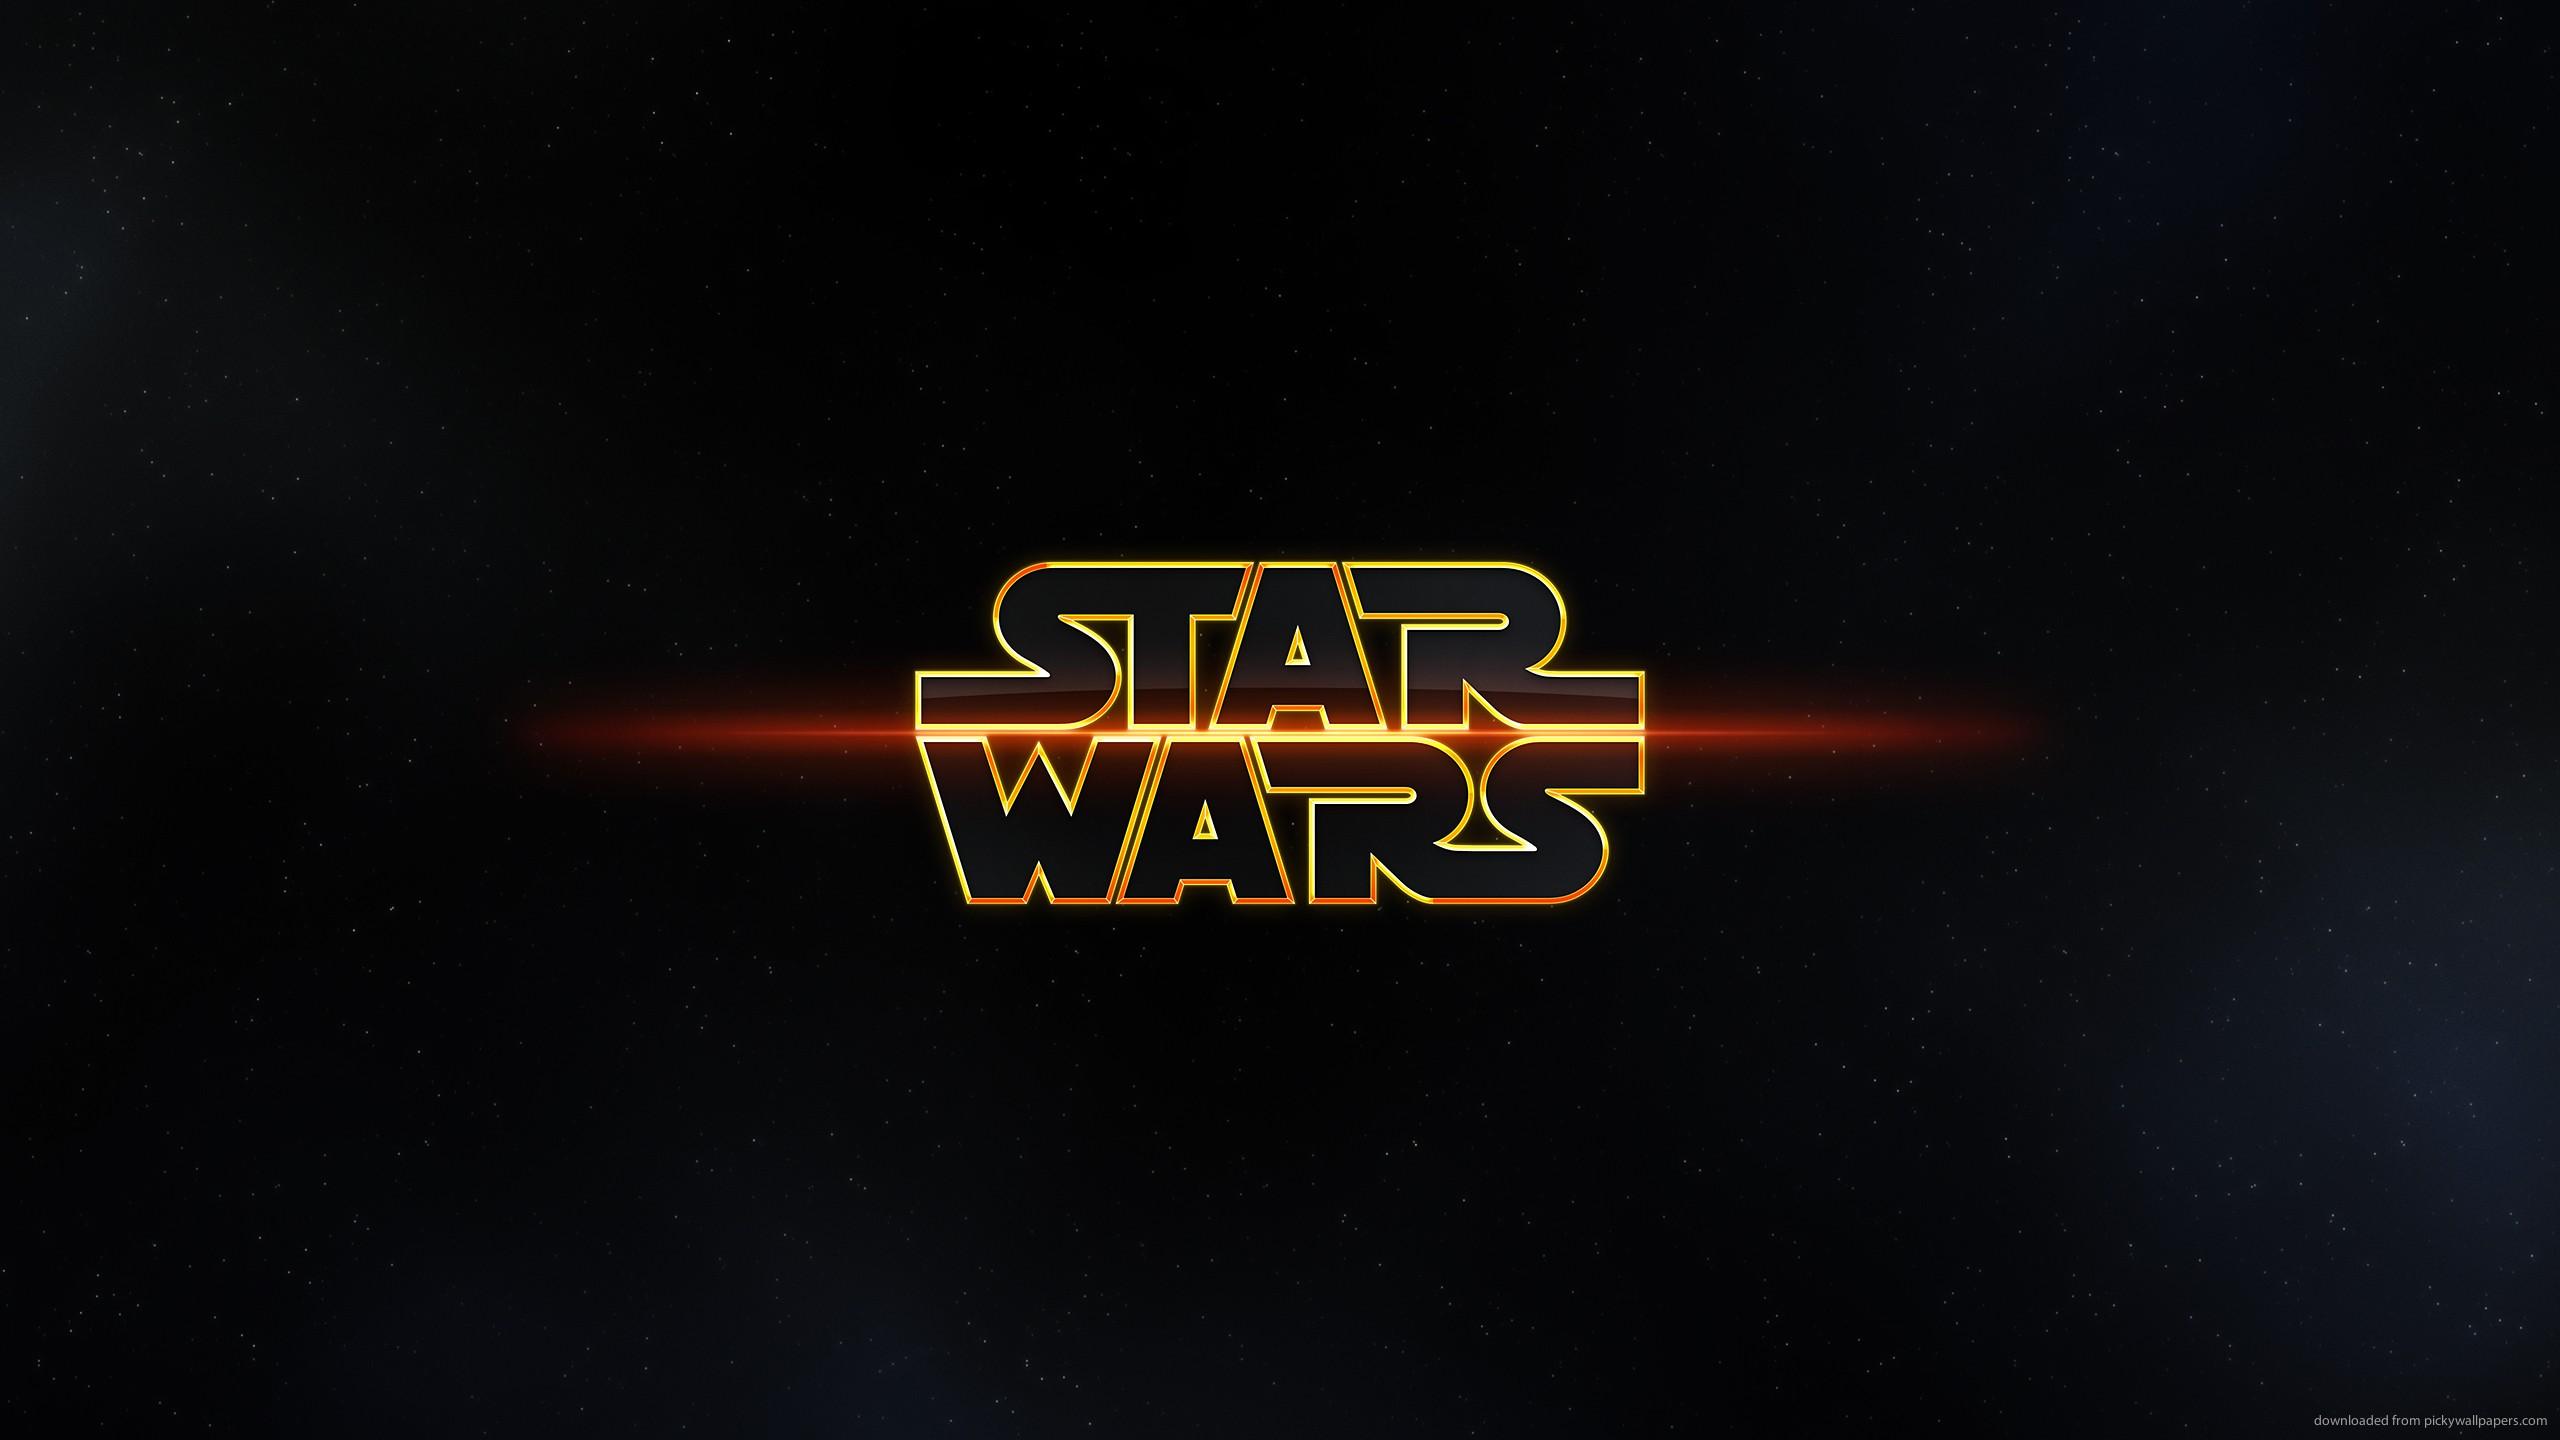 Star Wars wallpaper 2560x1440Download free amazing HD